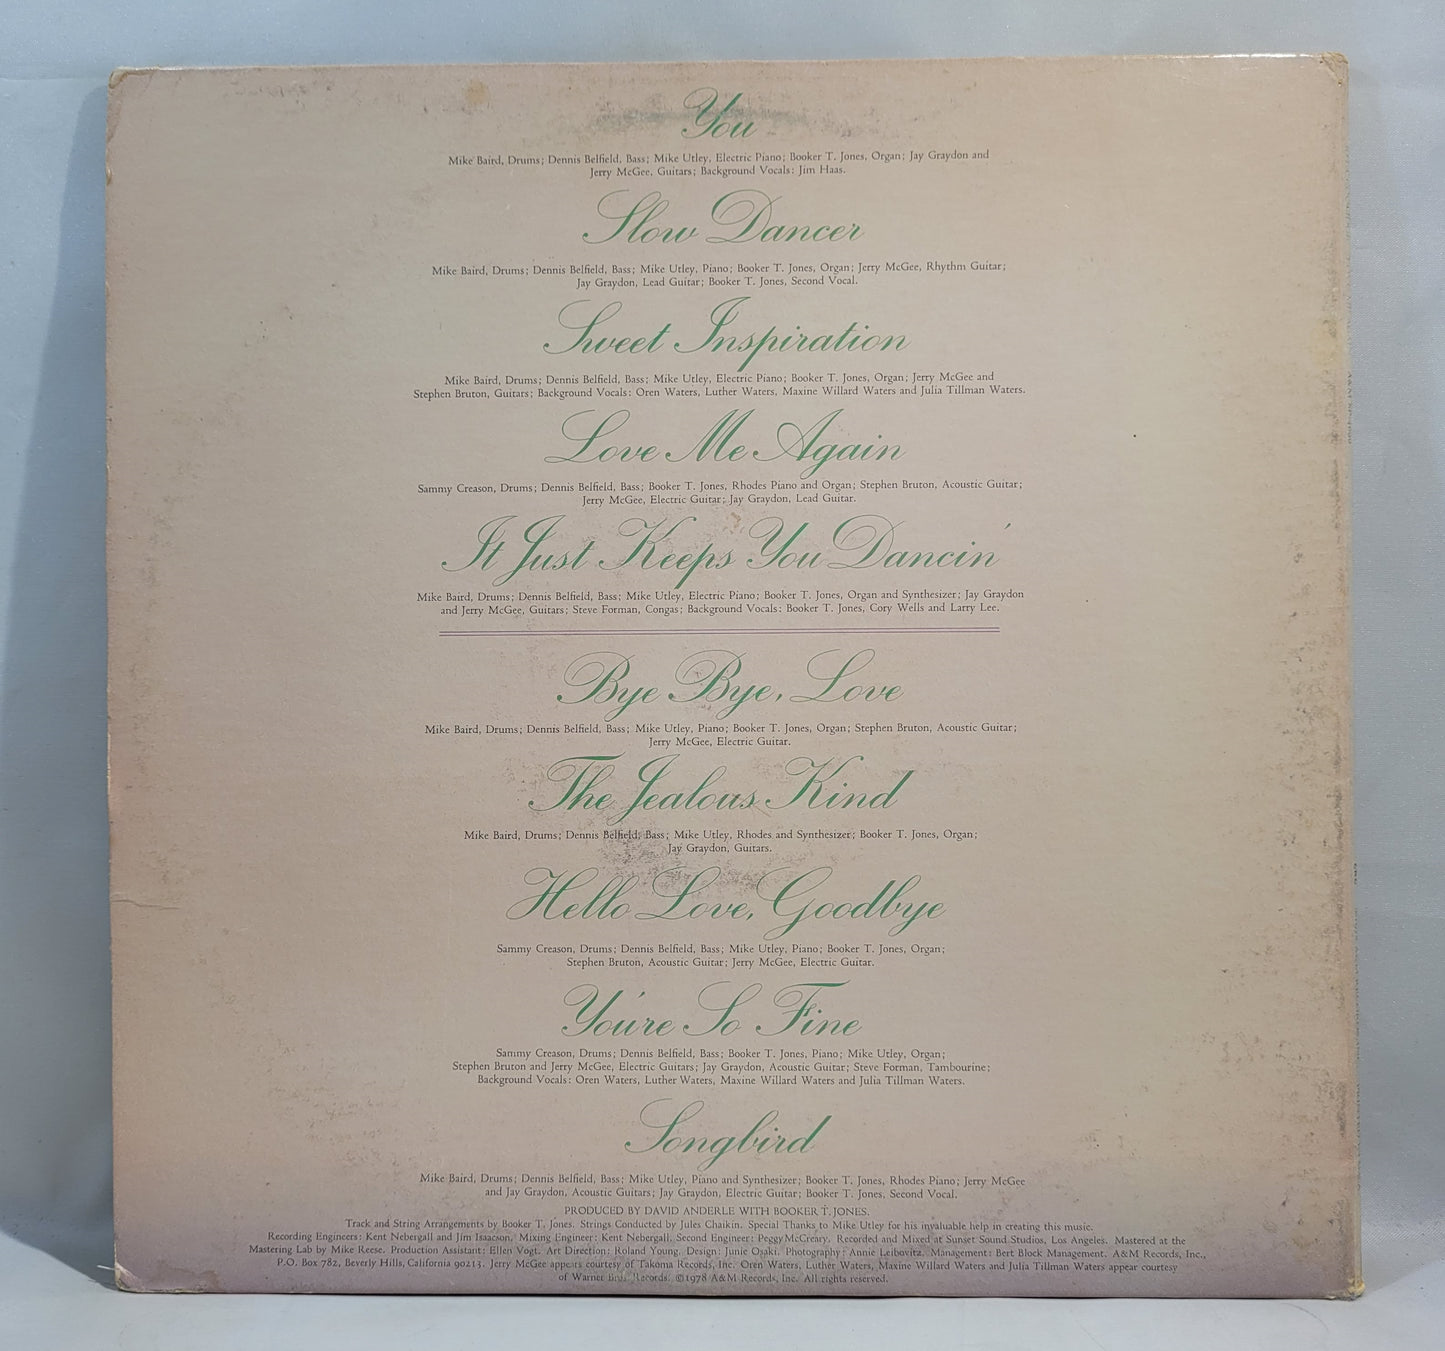 Rita Coolidge - Love Me Again [Vinyl Record LP]